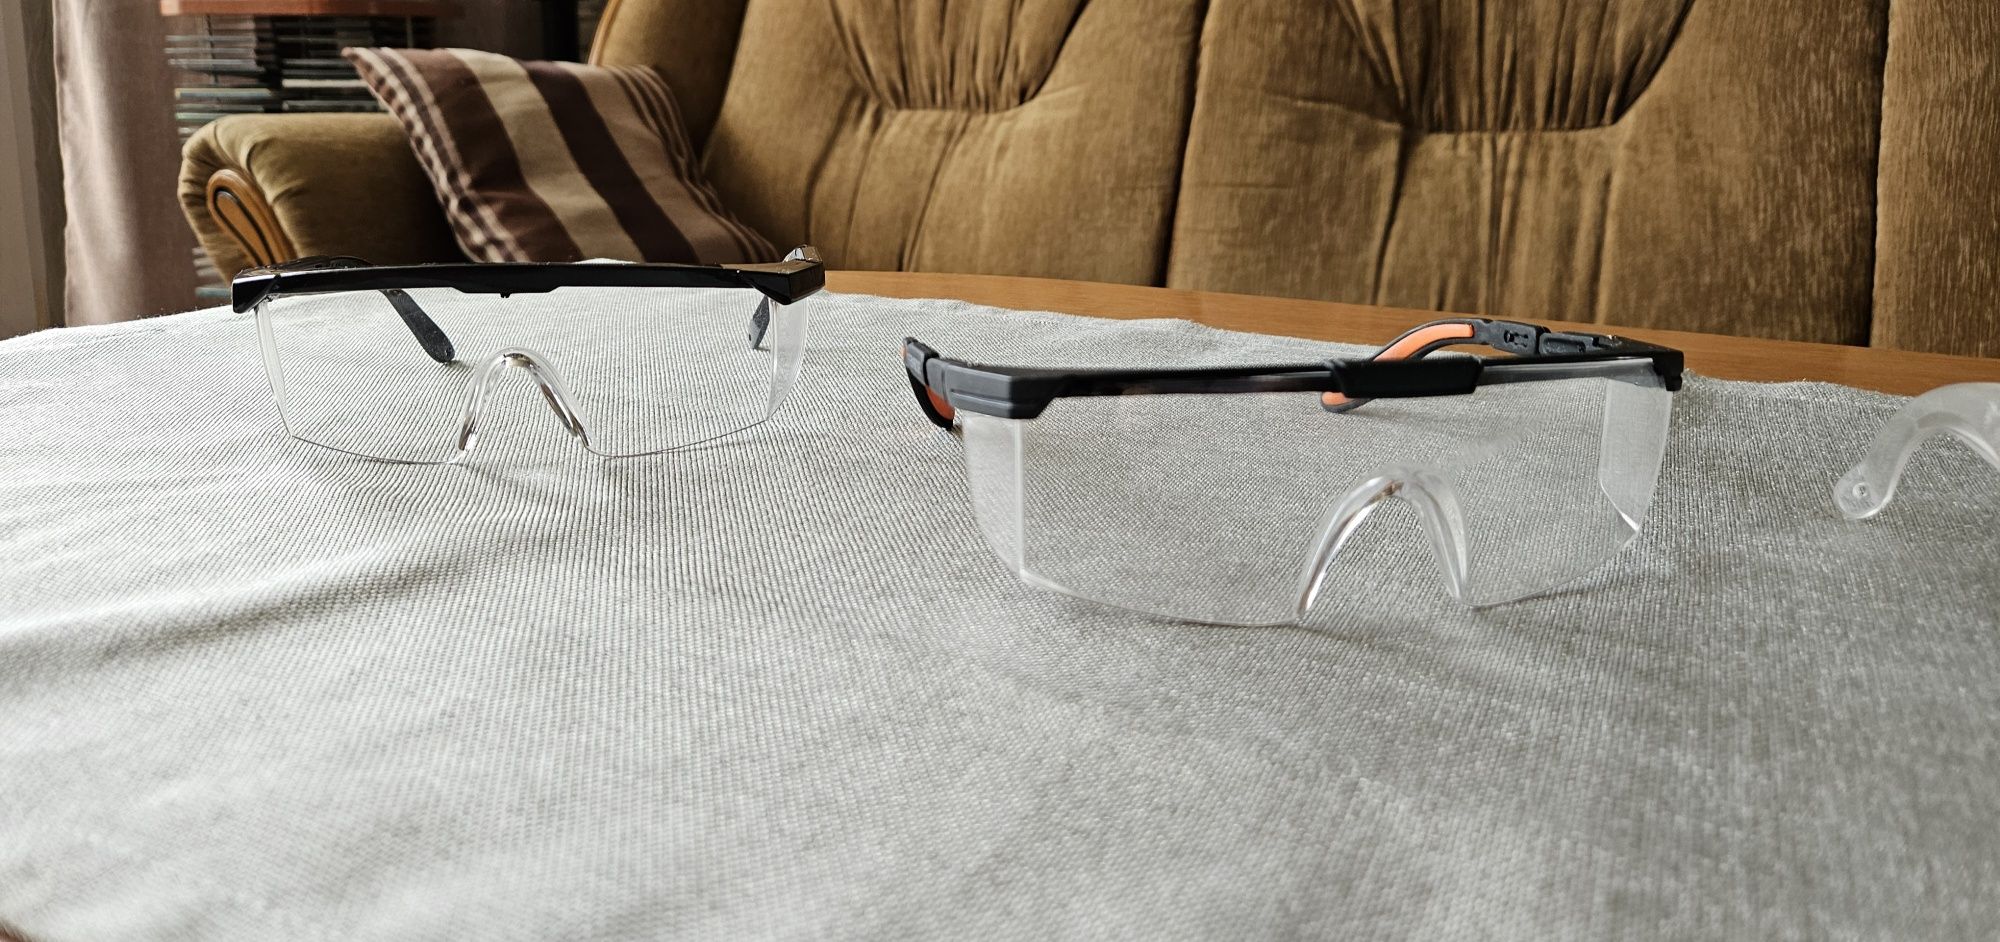 Nowe okulary ochronne Gog - Frameb REIS